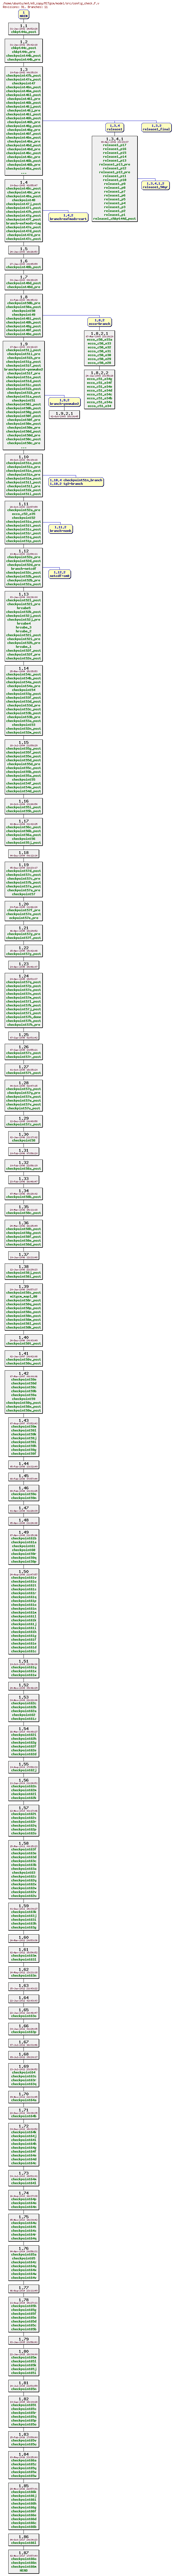 Revisions of MITgcm/model/src/config_check.F